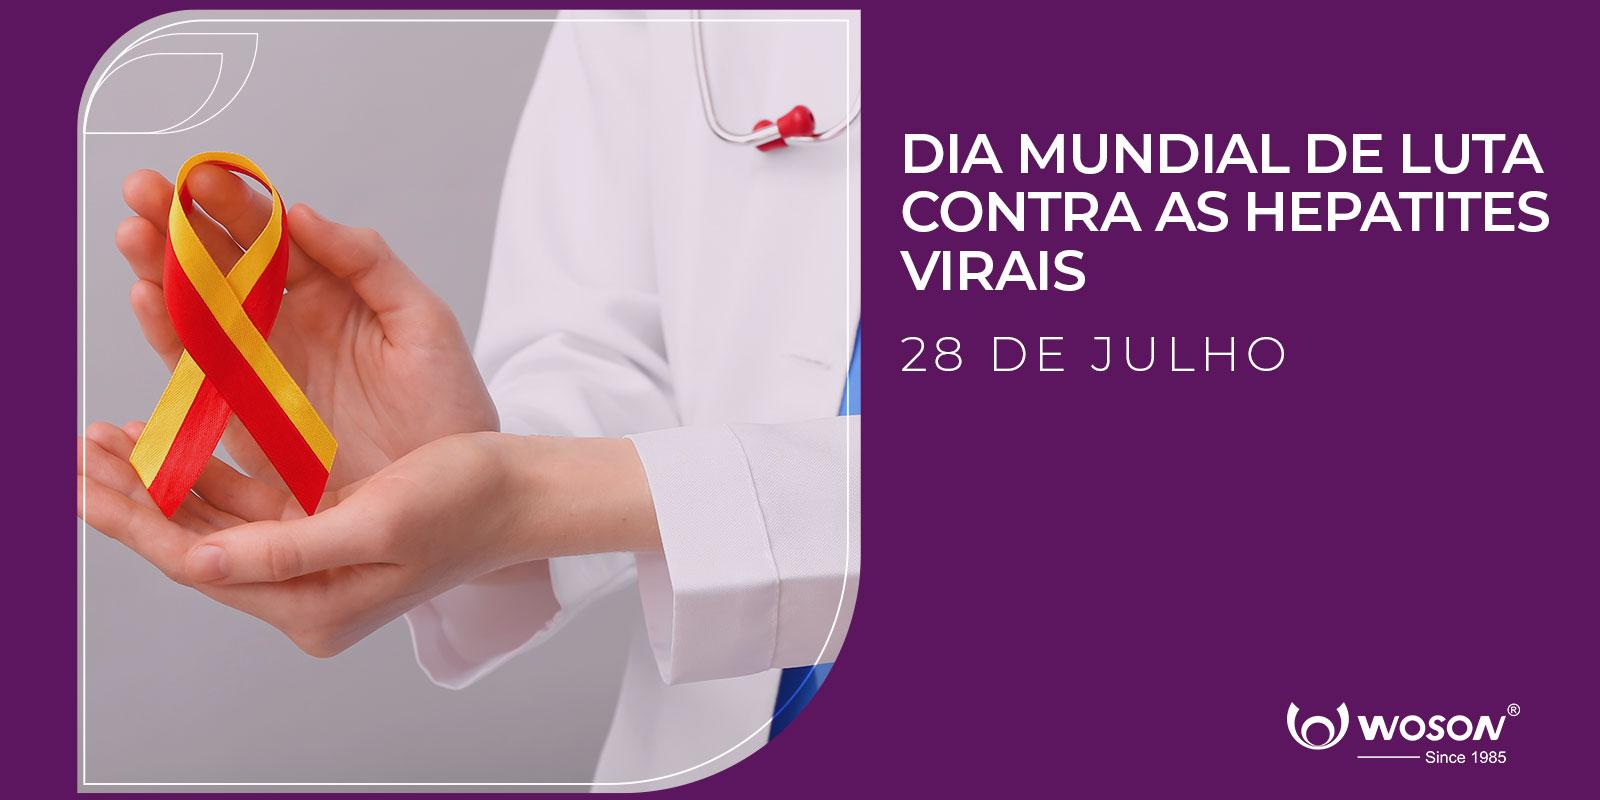  Dia Mundial de Luta Contra as Hepatites Virais - 28 DE JULHO